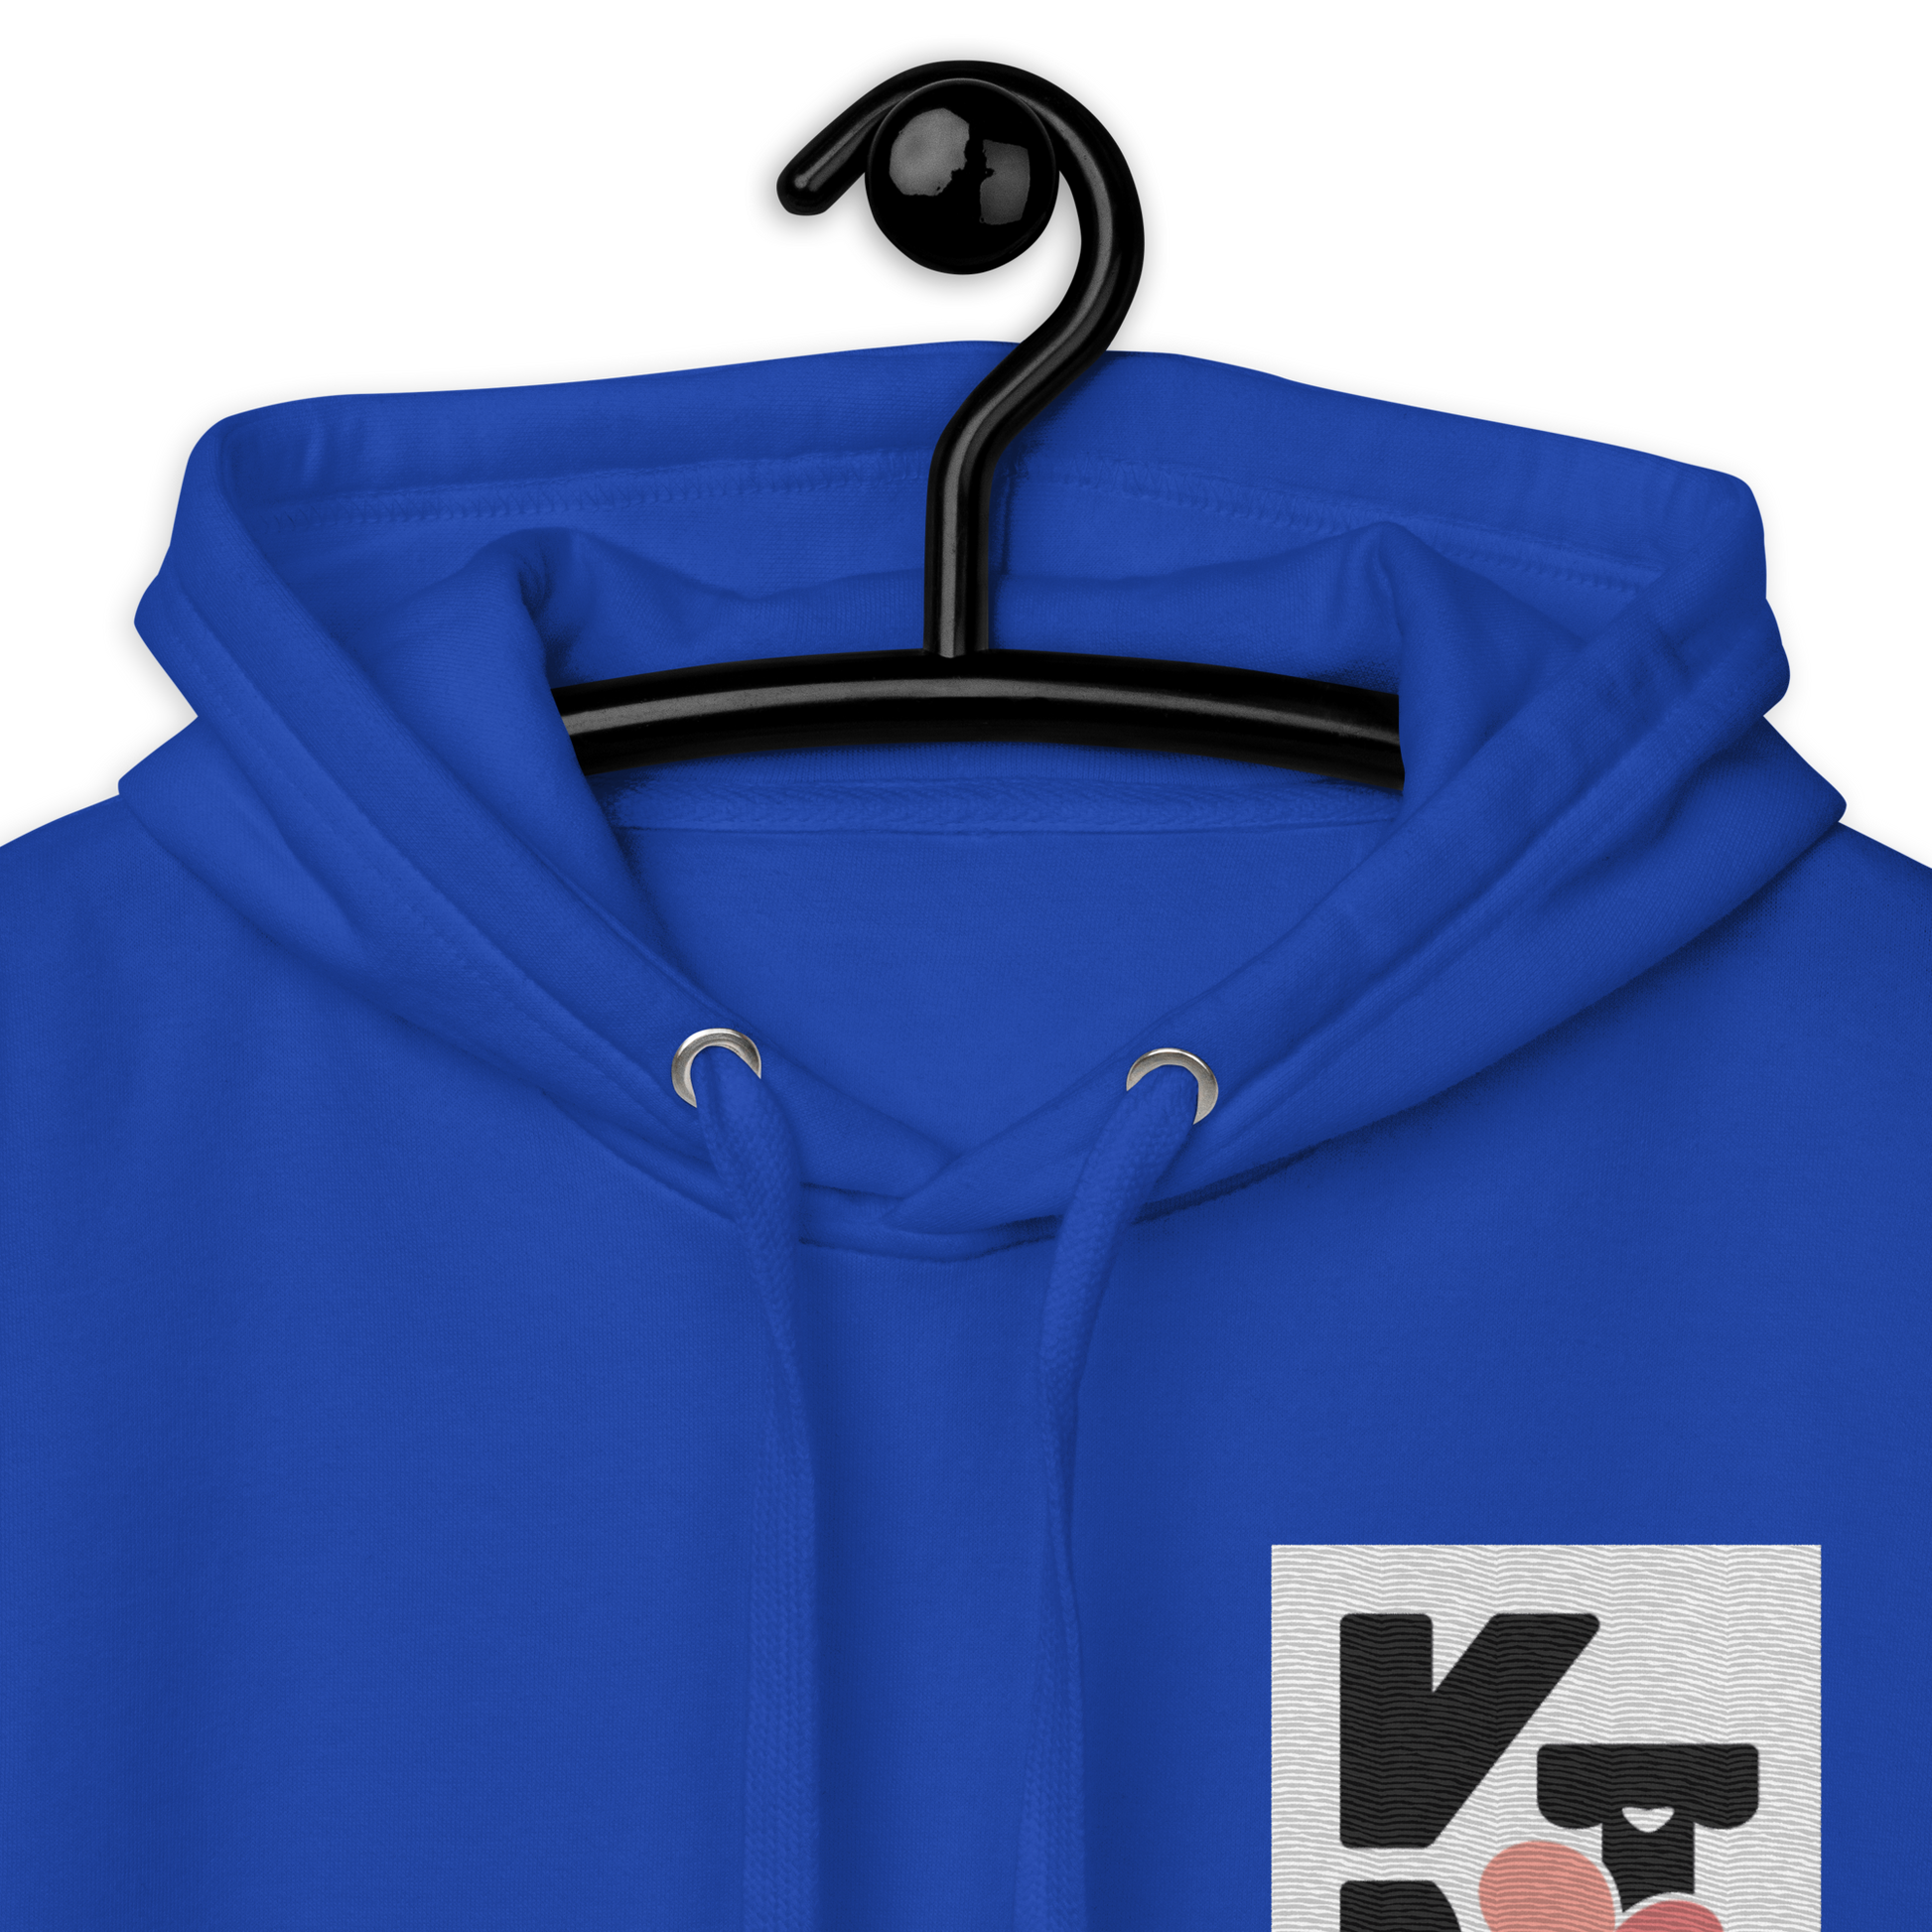 Unisex-Kapuzenpullover in leuchtend blauer Farbe mit Klexgetier-Logo für Hundeliebhaber und Sportbegeisterte der Marke Klexgetier.